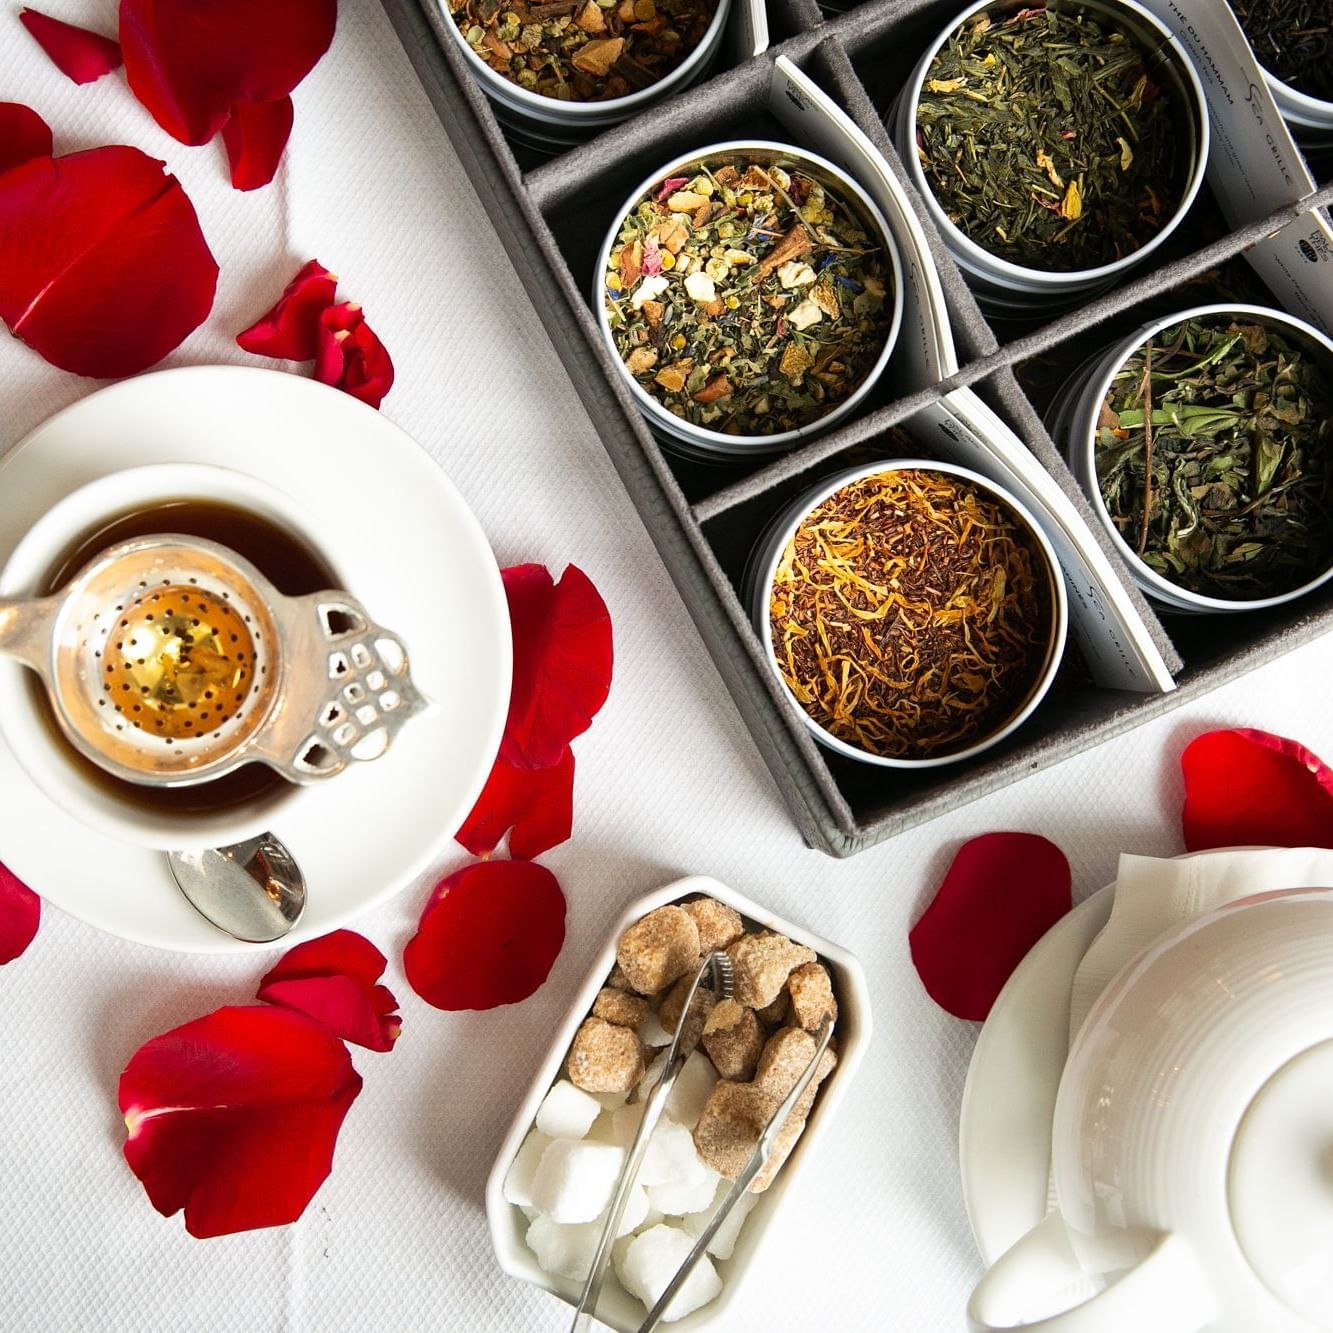 Tea and rose petals